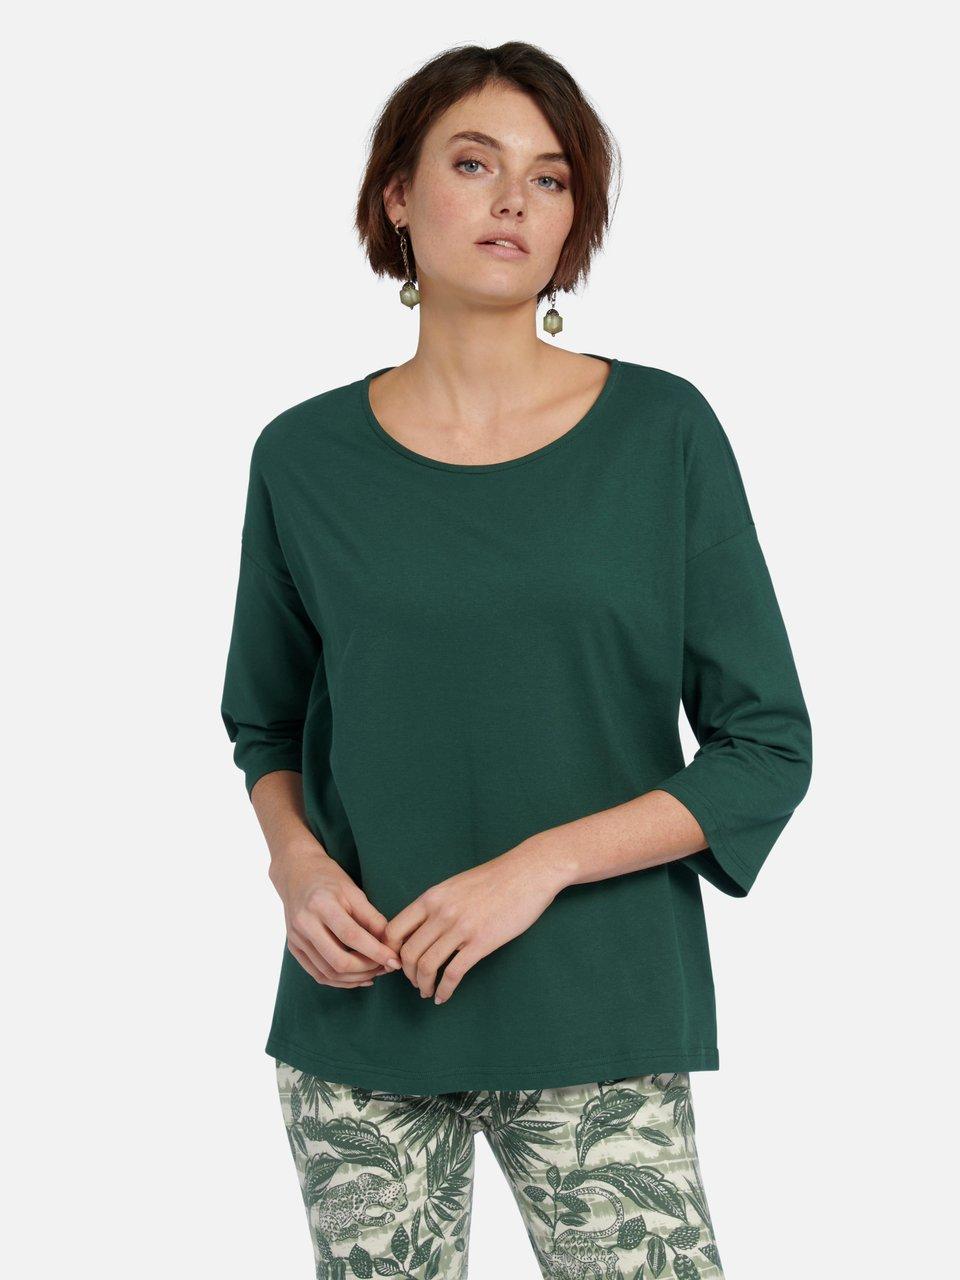 Green Cotton - Le T-shirt Gurli 100% coton